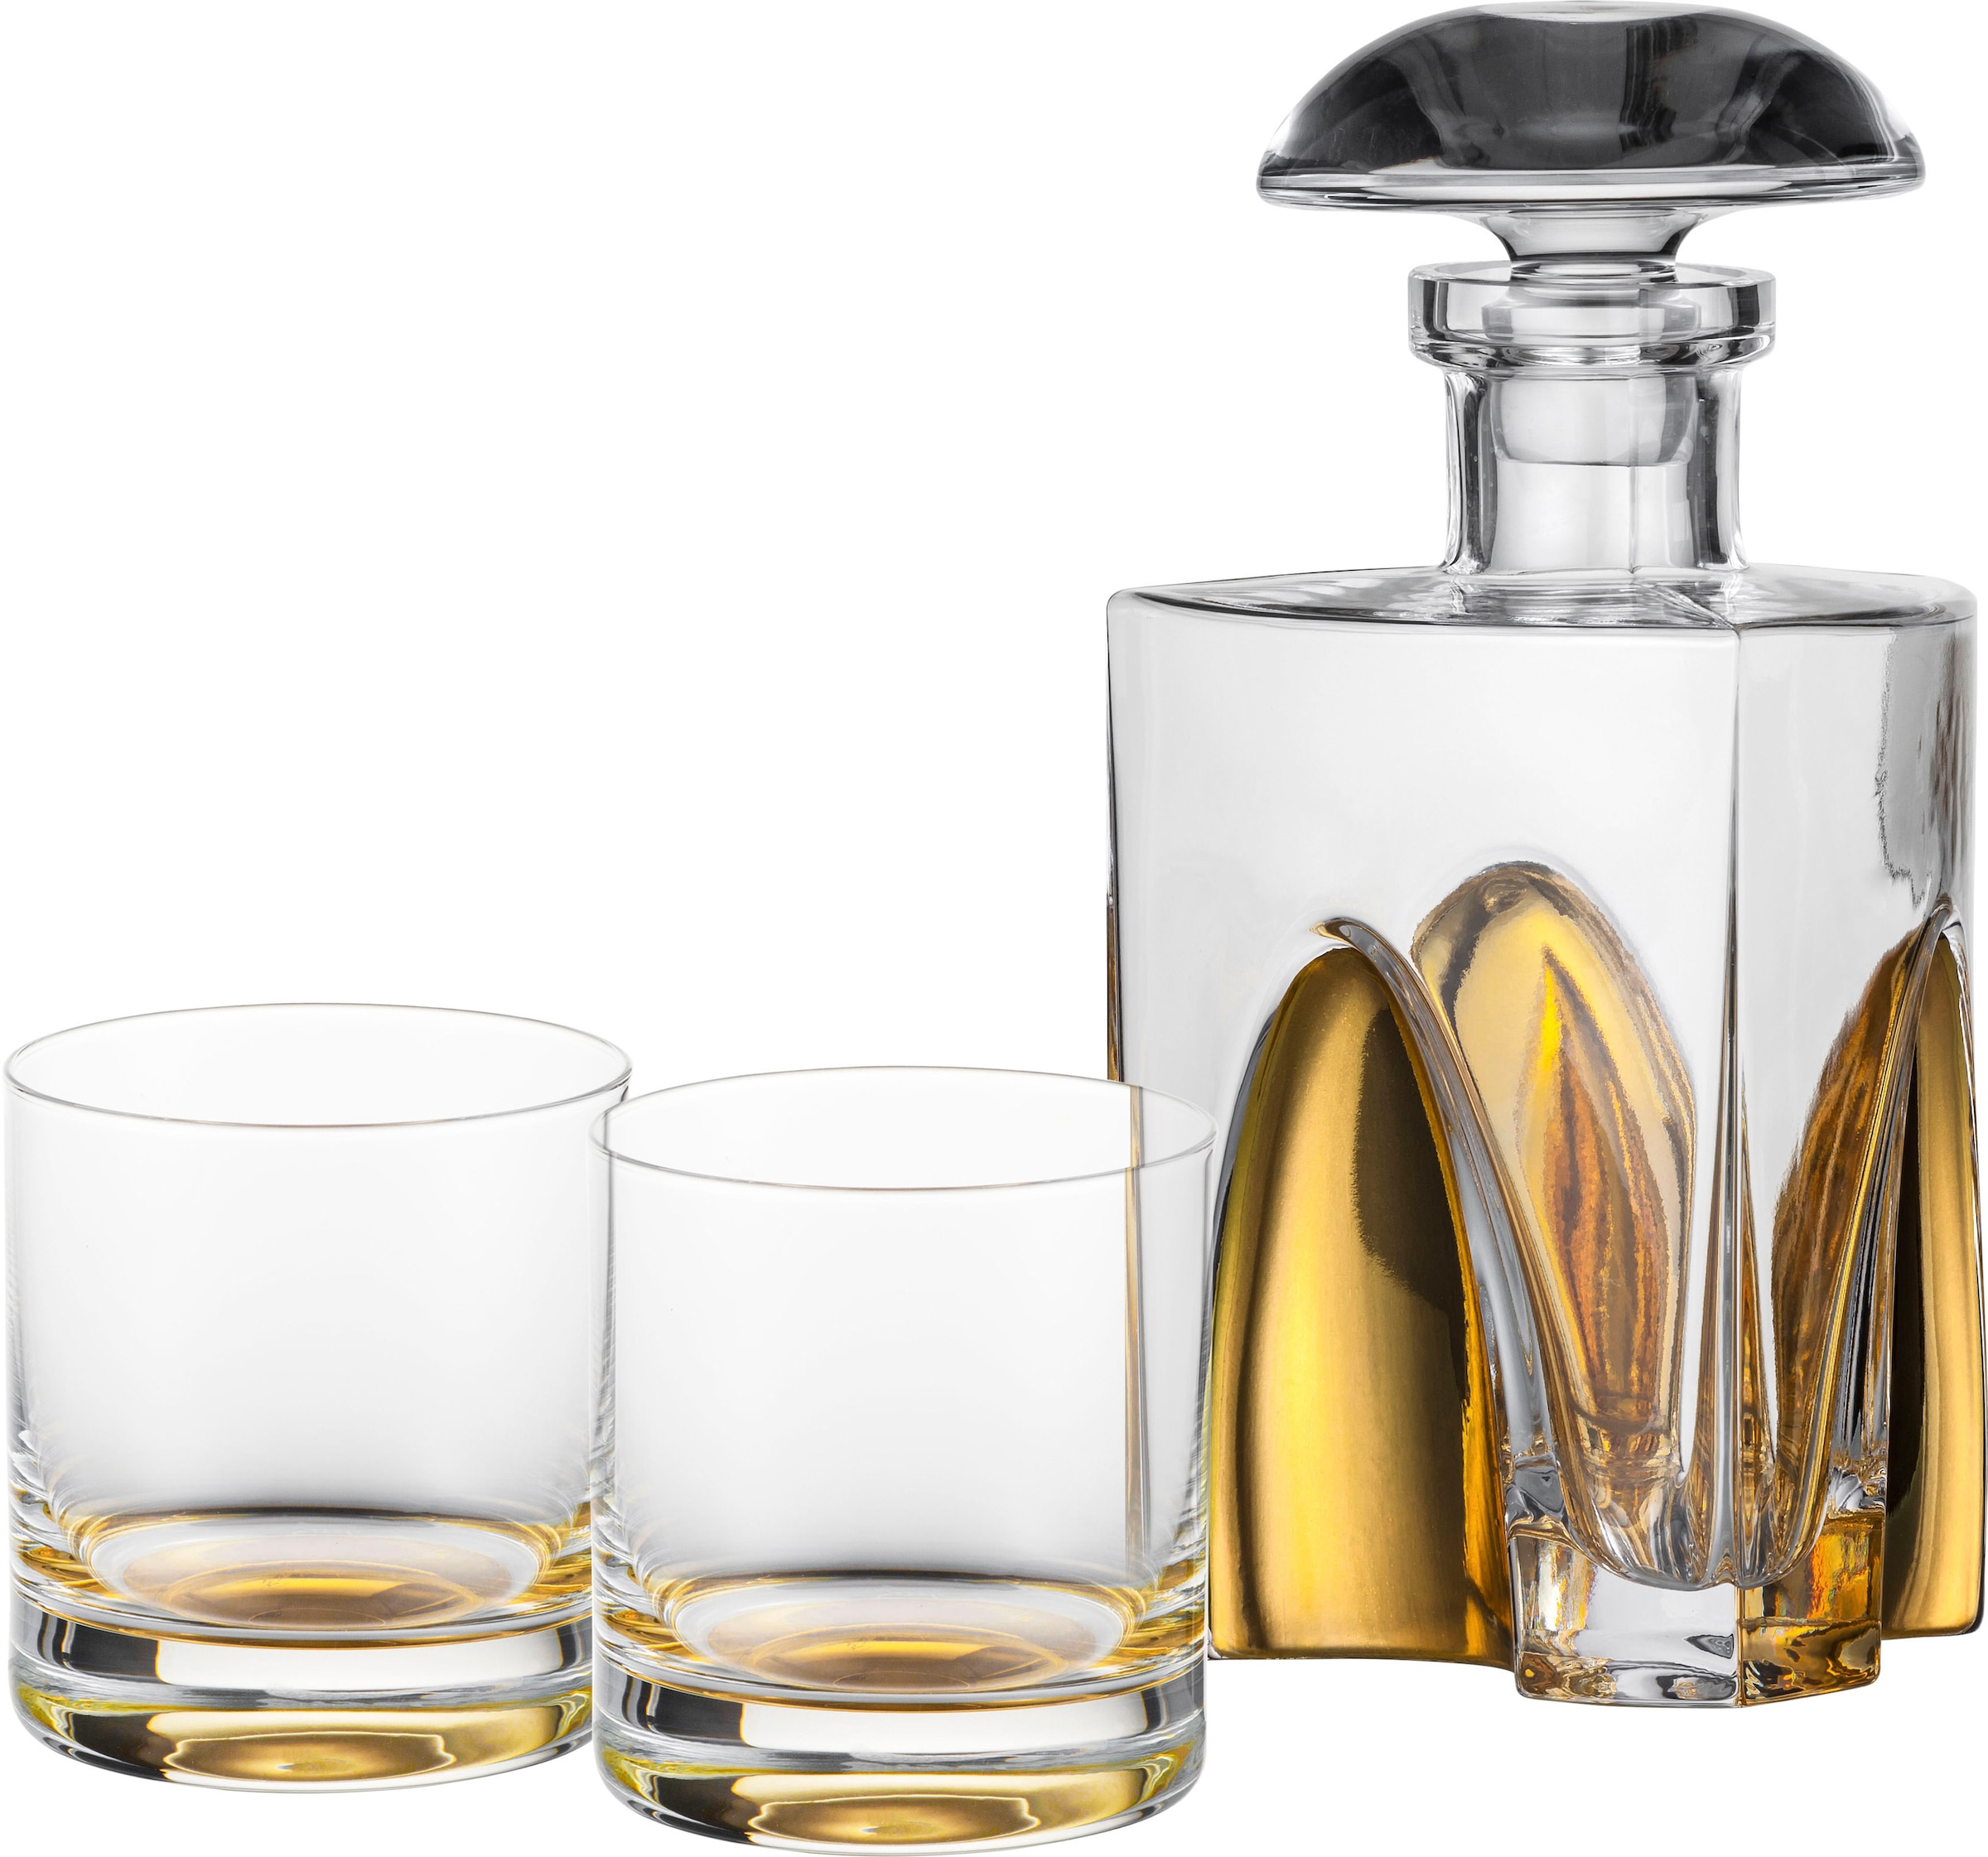 Eisch Whiskyglas »GENTLEMAN, Made in Germany«, (Set, 3 tlg., 1 Whiskykaraffe, 2 Whiskybecher im Geschenkkarton), mundgeblasen, in Handarbeit mit echtem Gold veredelt, 3-teilig